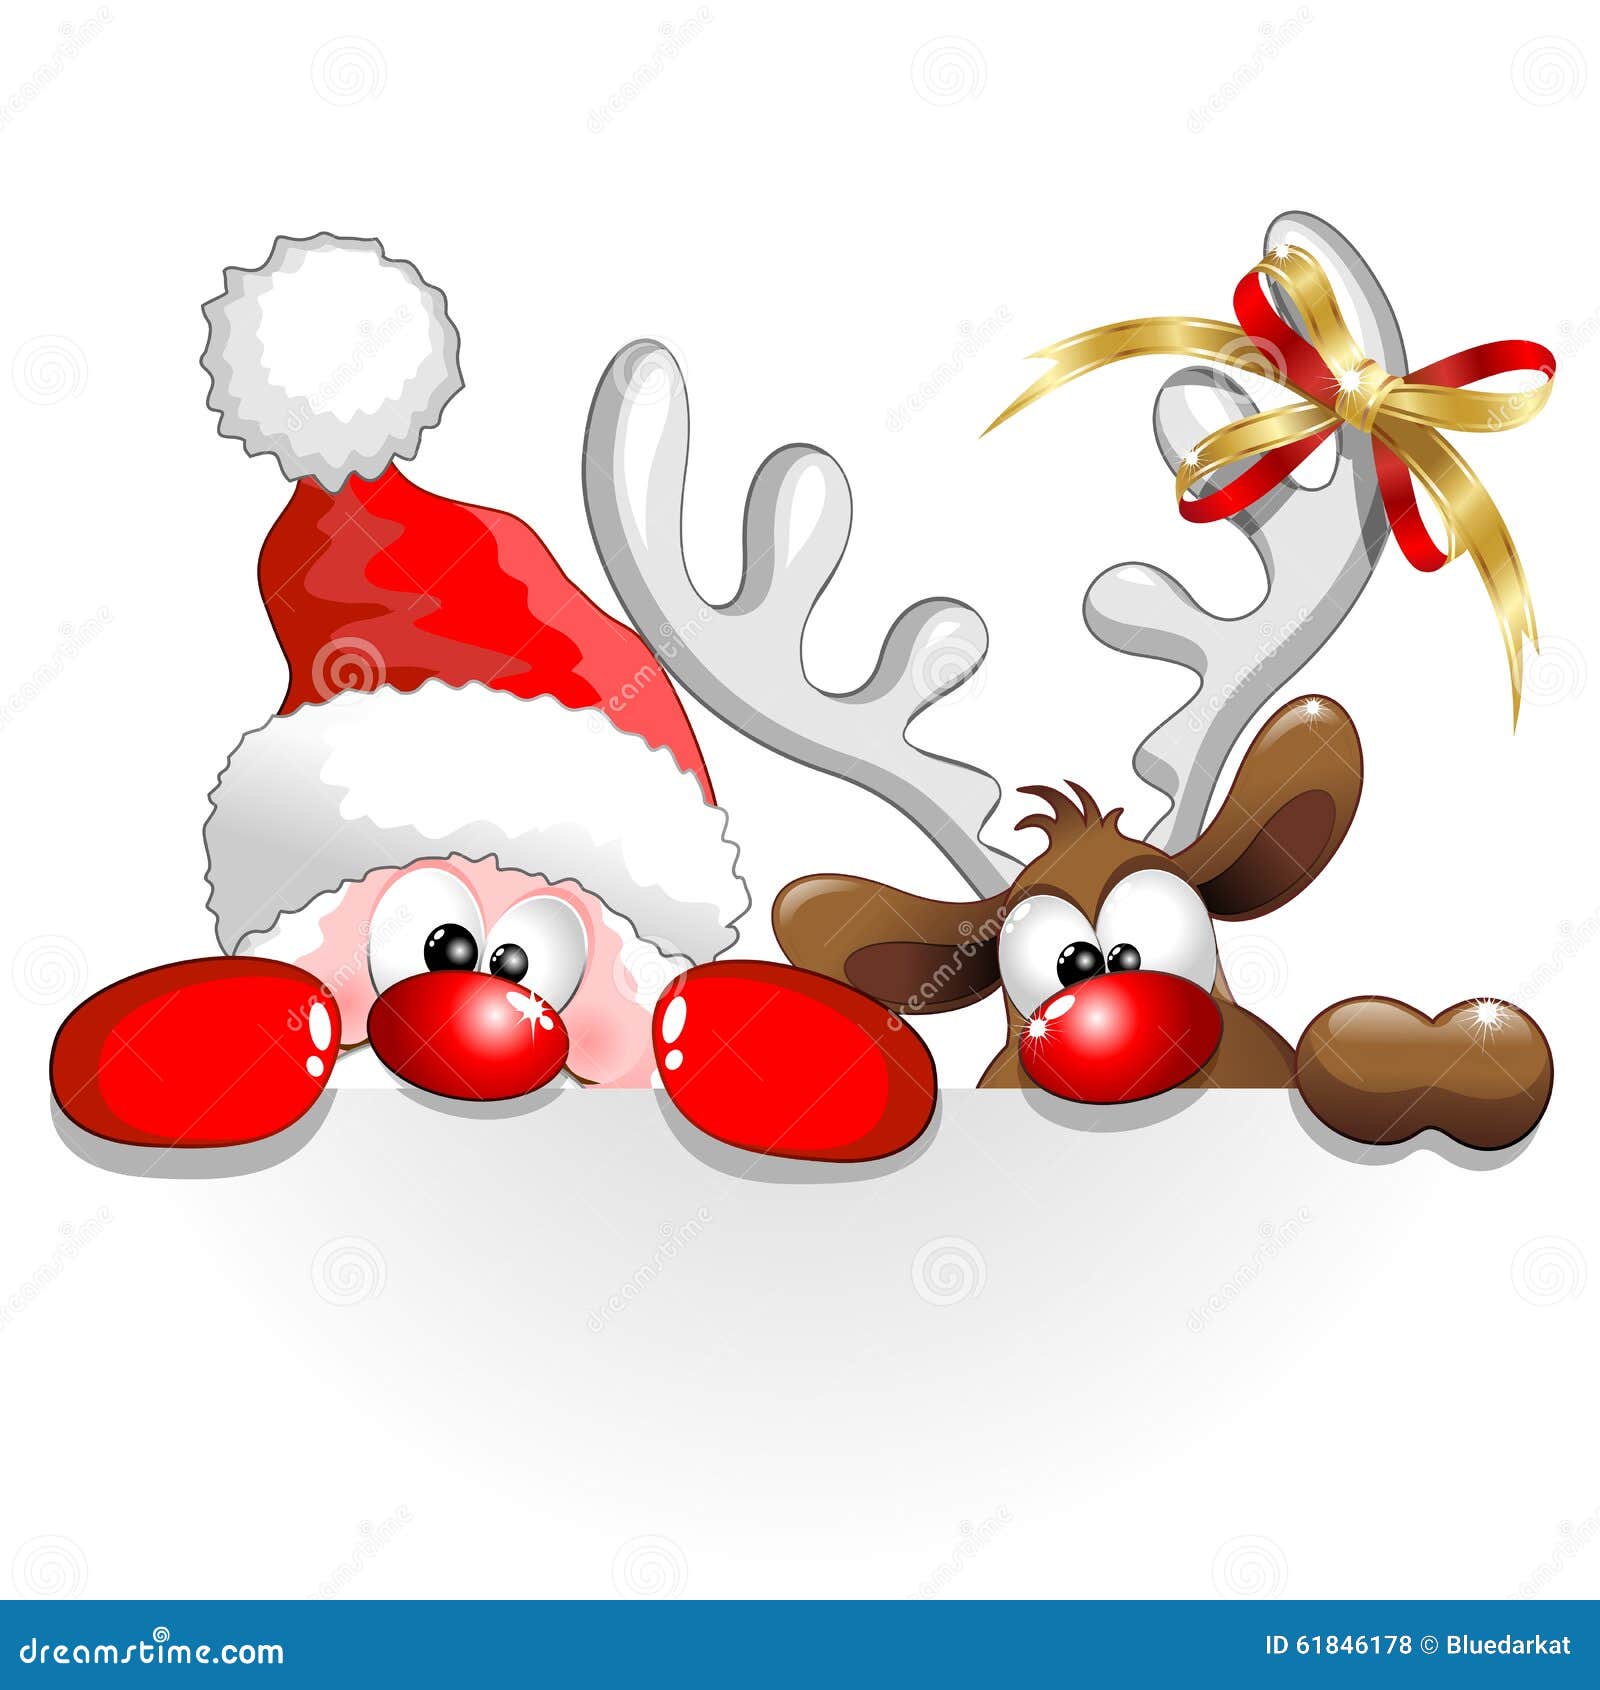 christmas santa and reindeer fun cartoon